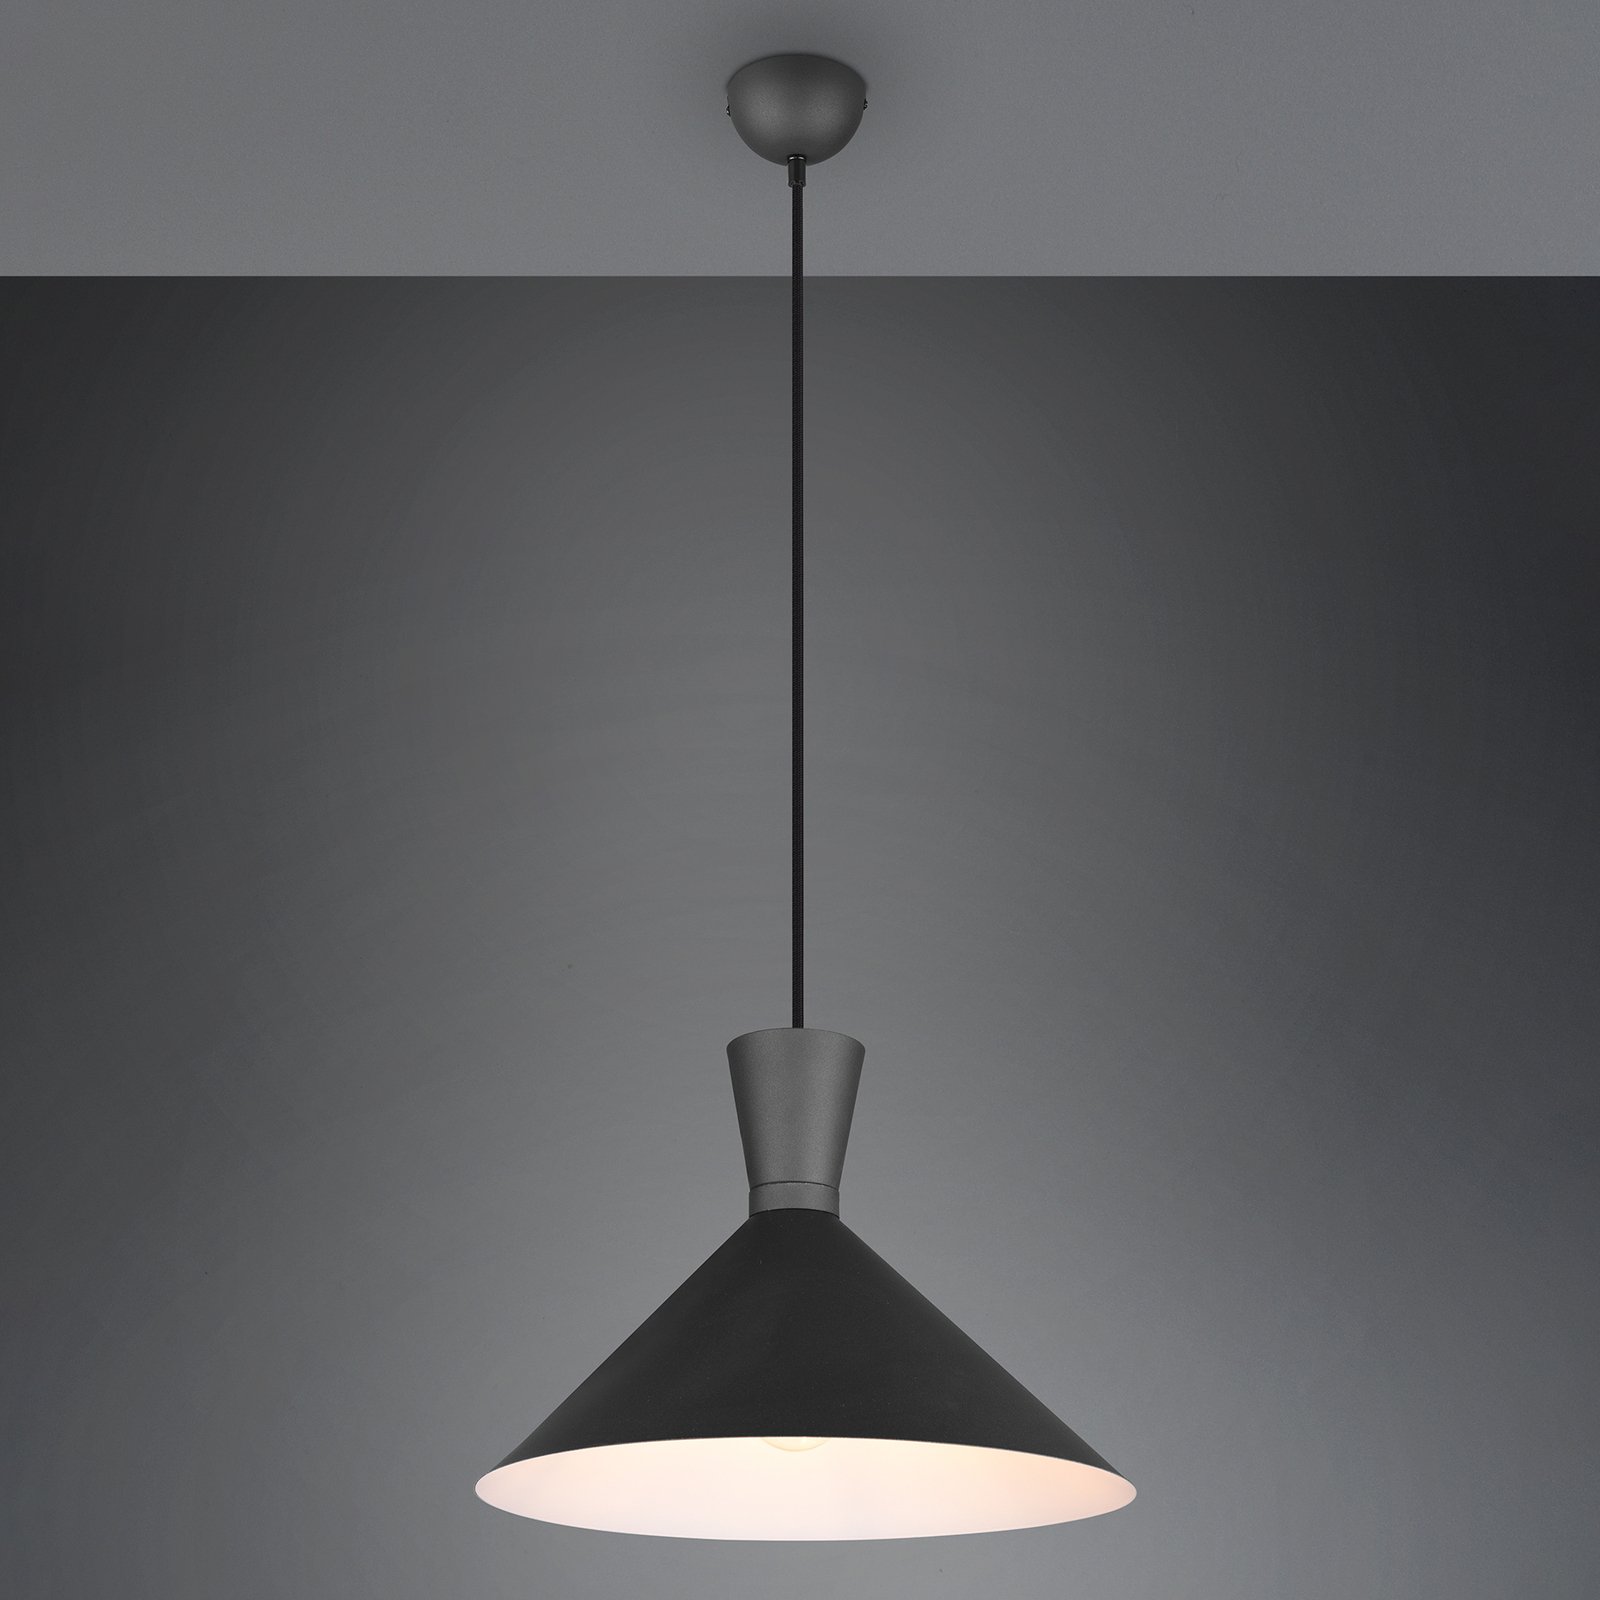 Enzo hængelampe, Ø 35 cm, sort, 1 lyskilde